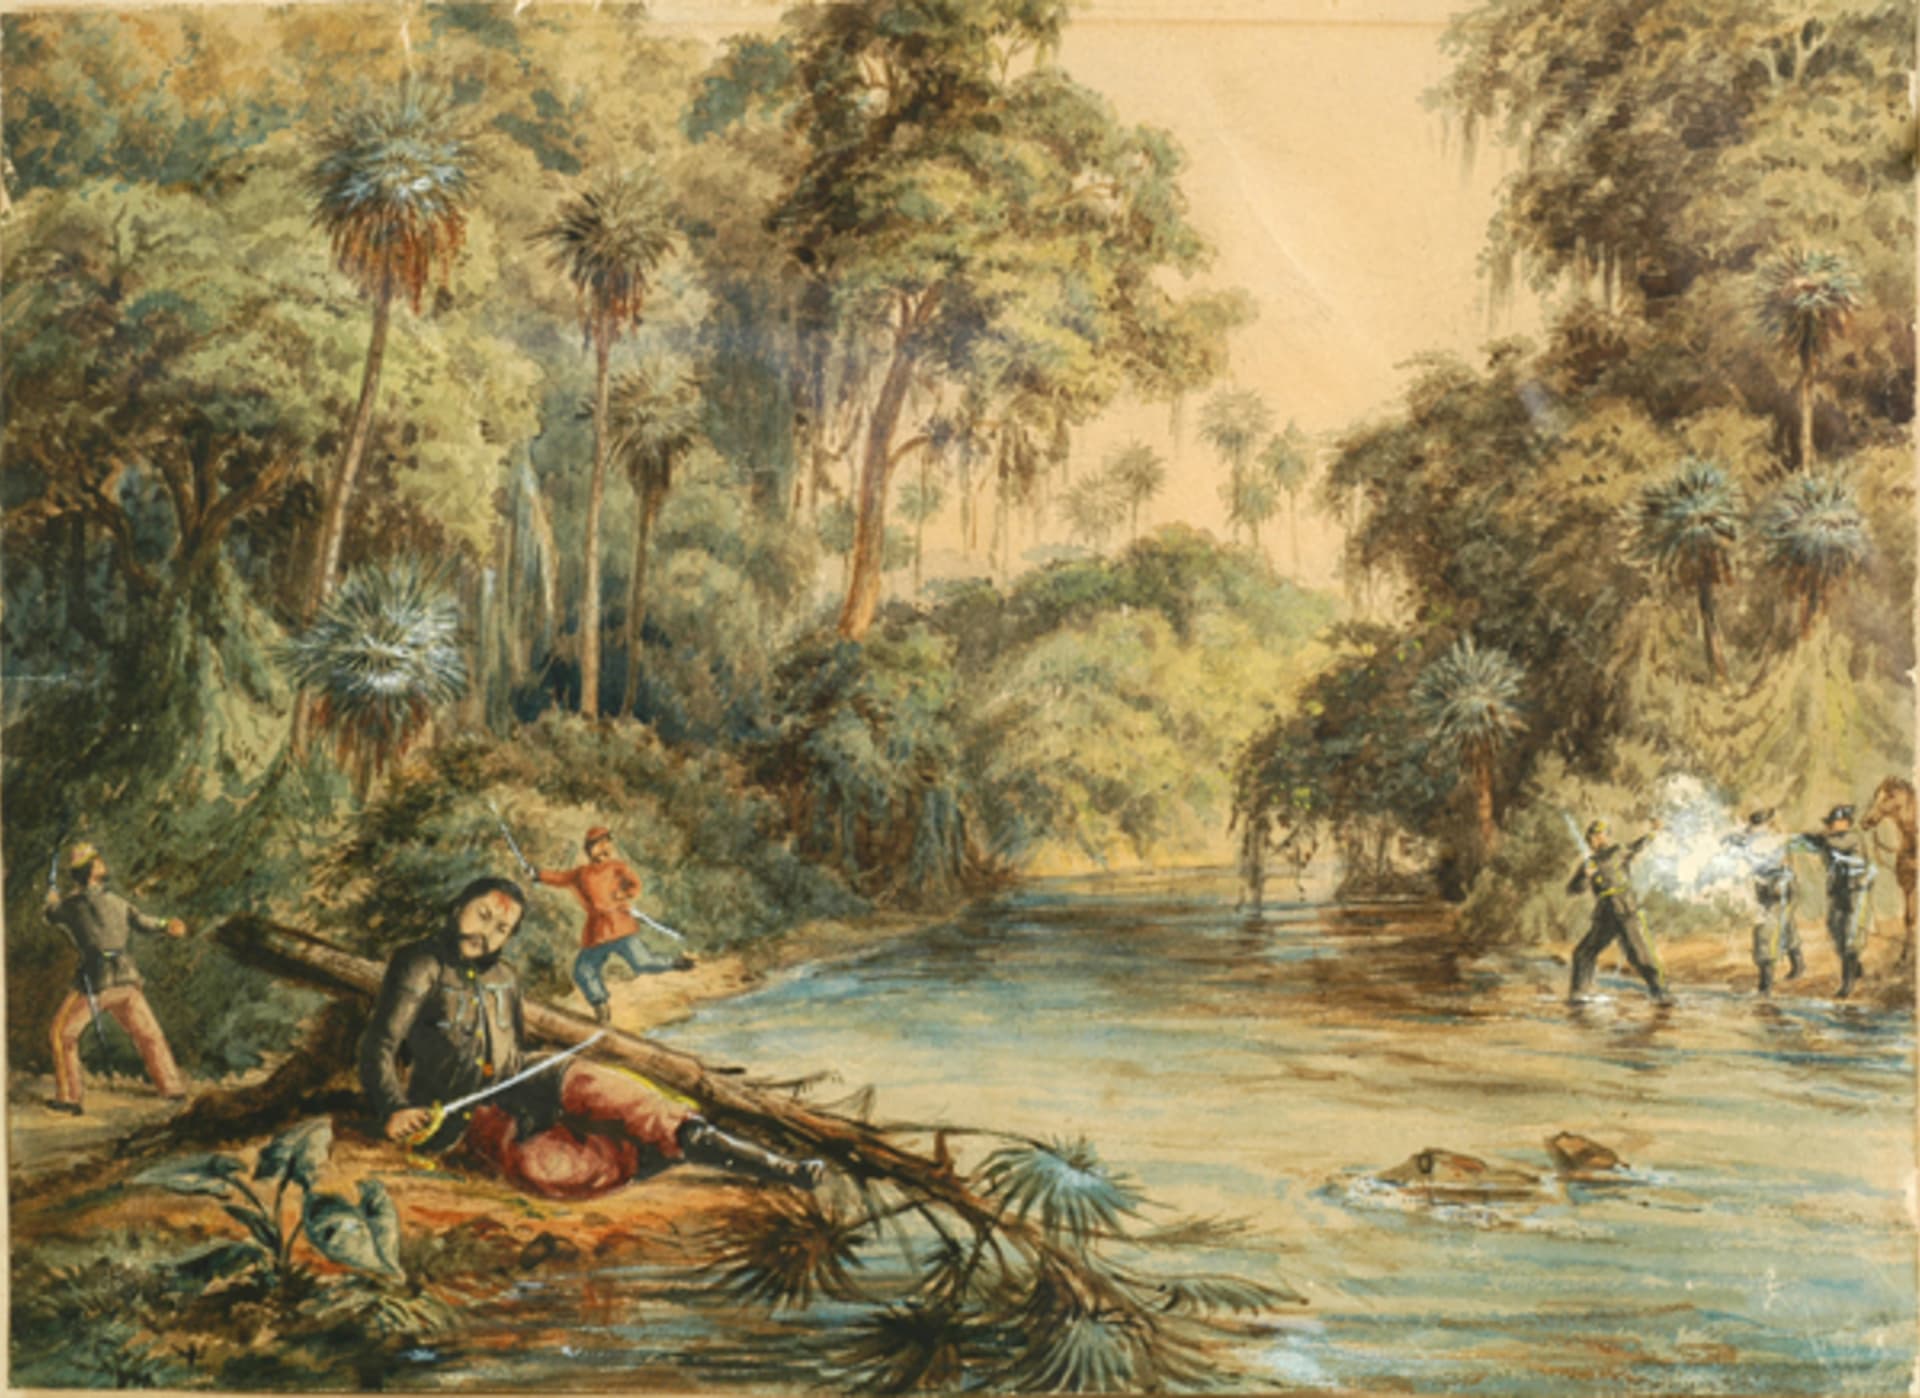 Lópezova smrt na břehu říčky Aquidabán 1. března 1870